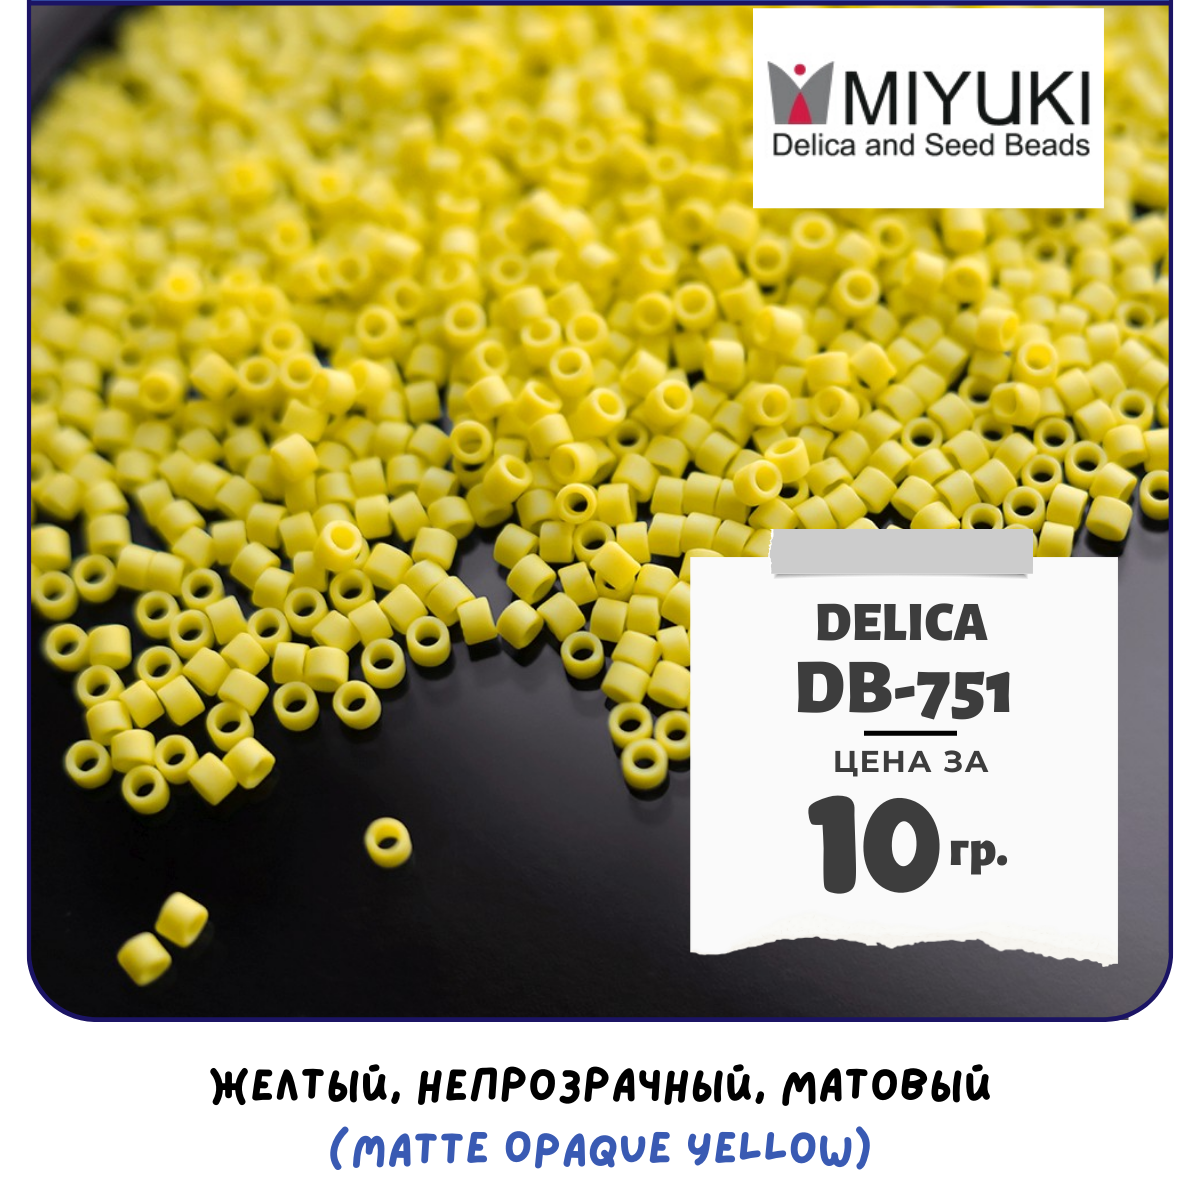 Бисер японский MIYUKI 10 гр Миюки цилиндрический Delica Делика 11/0 размер 11 DB-751 цвет желтый, непрозрачный, матовый (Matte Opaque Yellow).